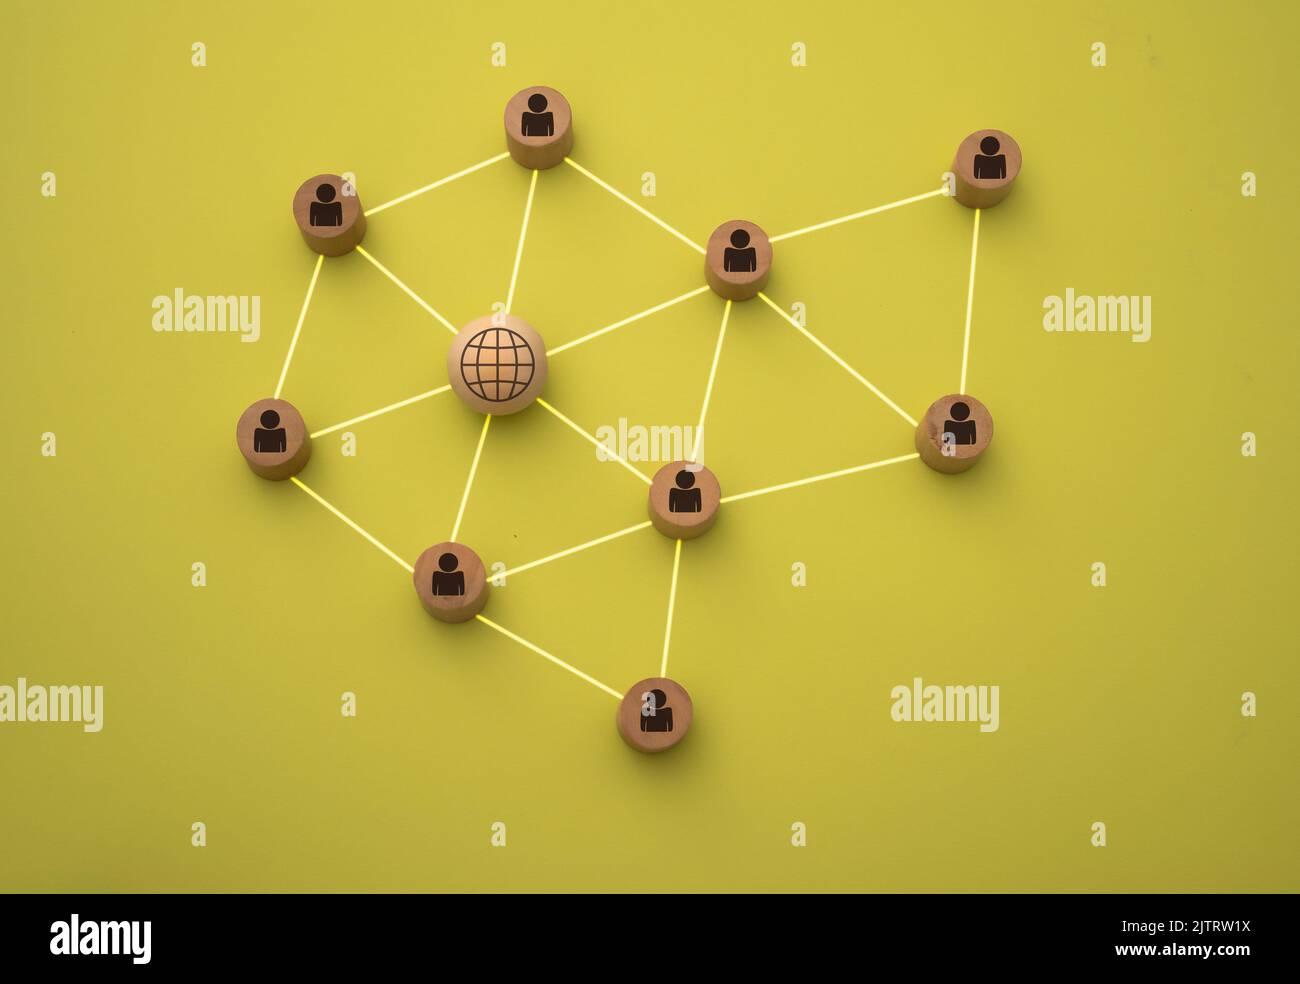 3D Darstellung von Menschen, die mit dem Netz in Form eines Netzes verbunden sind, dargestellt mit Holzstücken auf gelbem Hintergrund Stockfoto